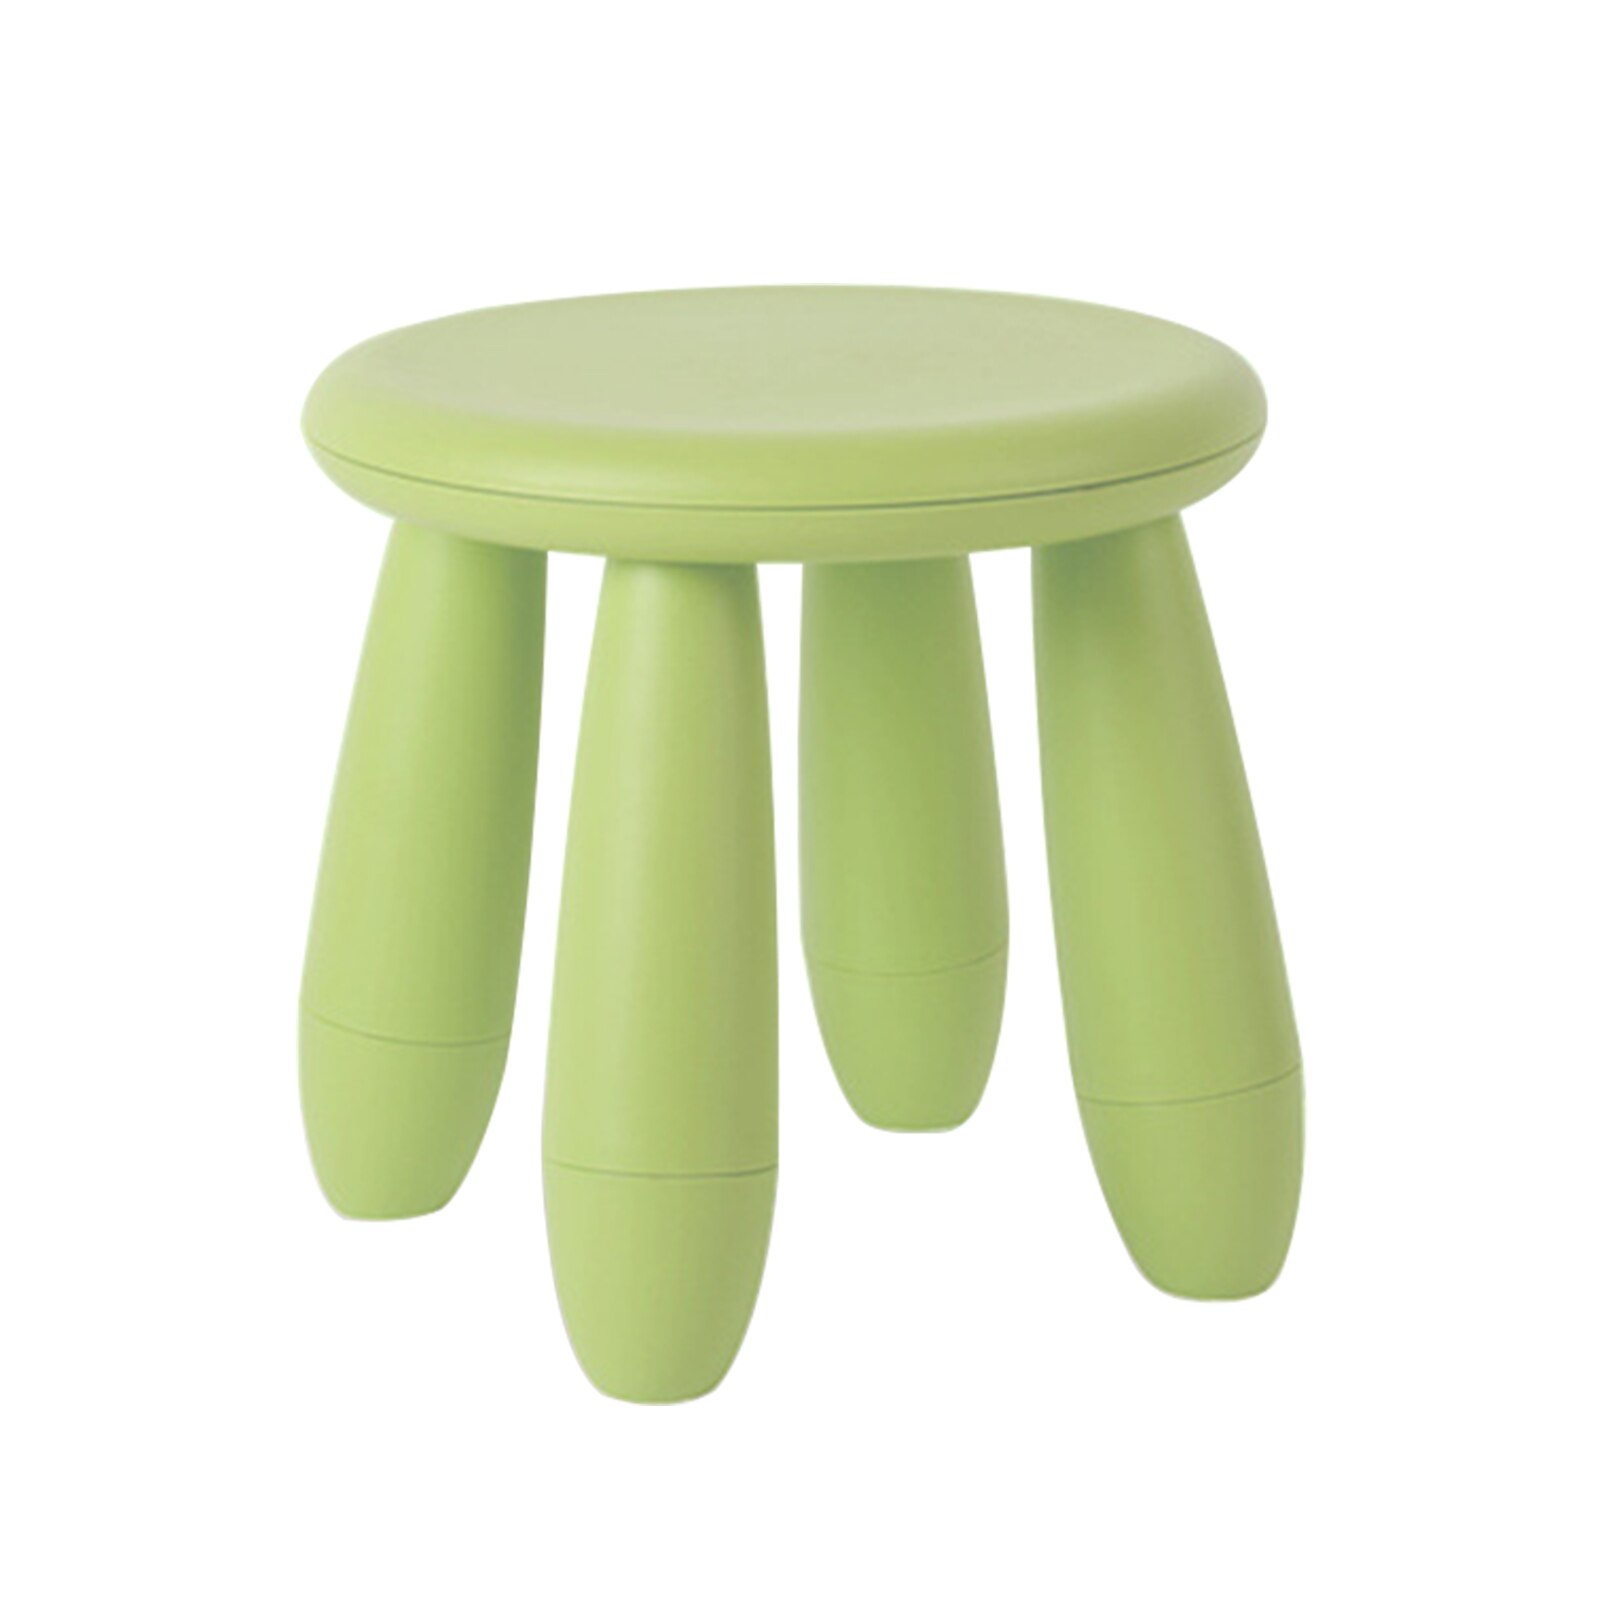 Pp mini bærbare møbler glat stue fortykket børnehave aftagelig børn skammel skridsikker rundt sæde hjem solid: Grøn